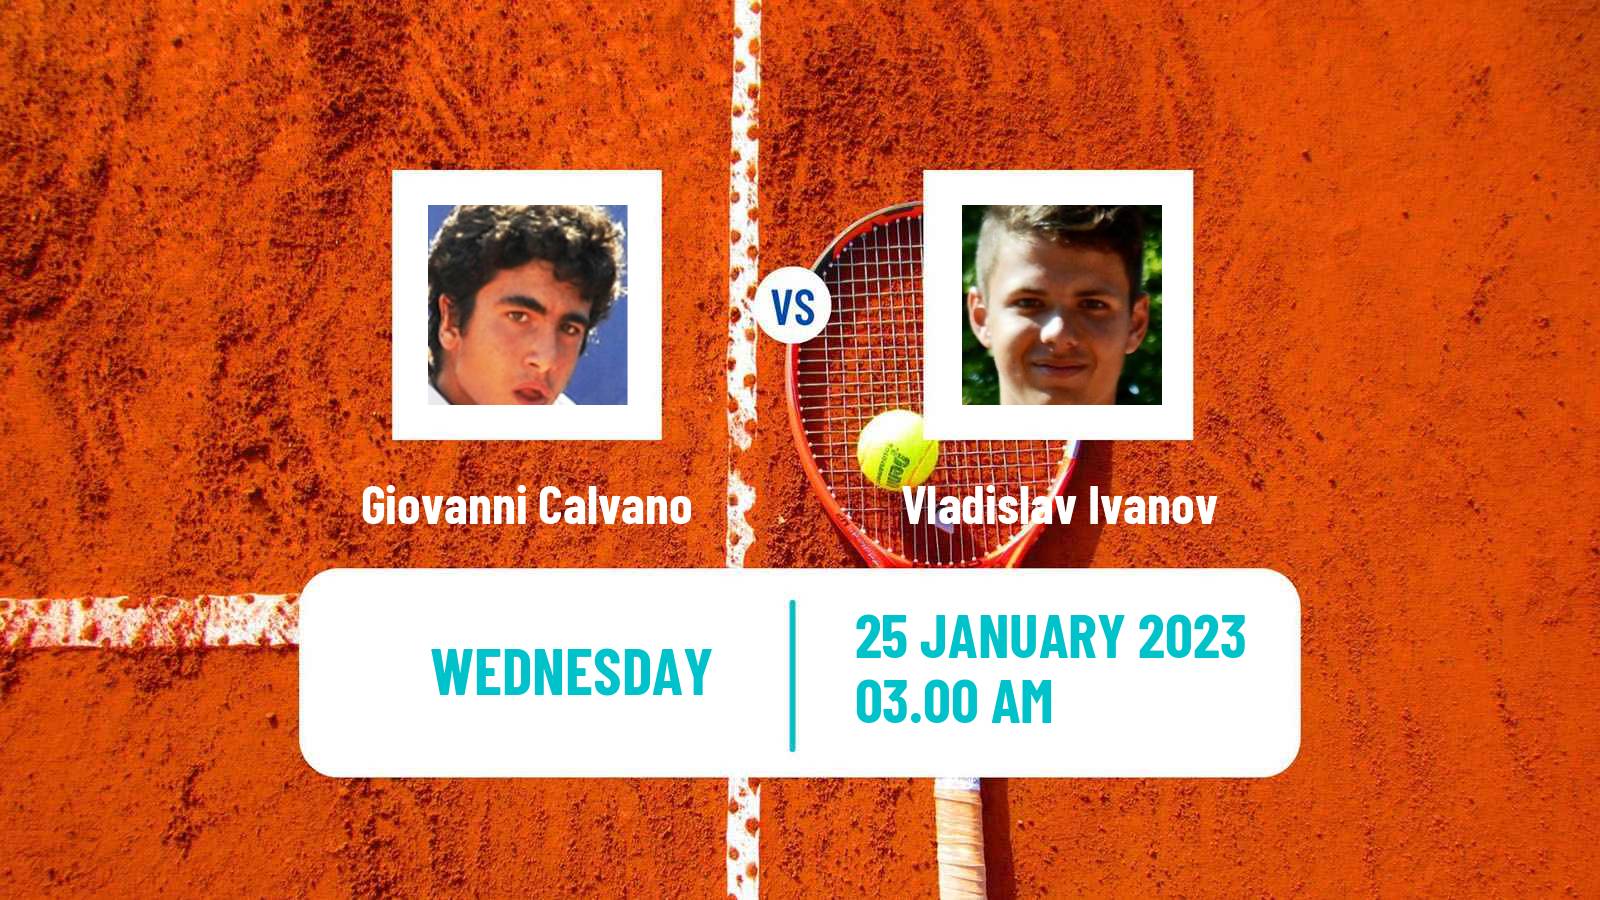 Tennis ITF Tournaments Giovanni Calvano - Vladislav Ivanov